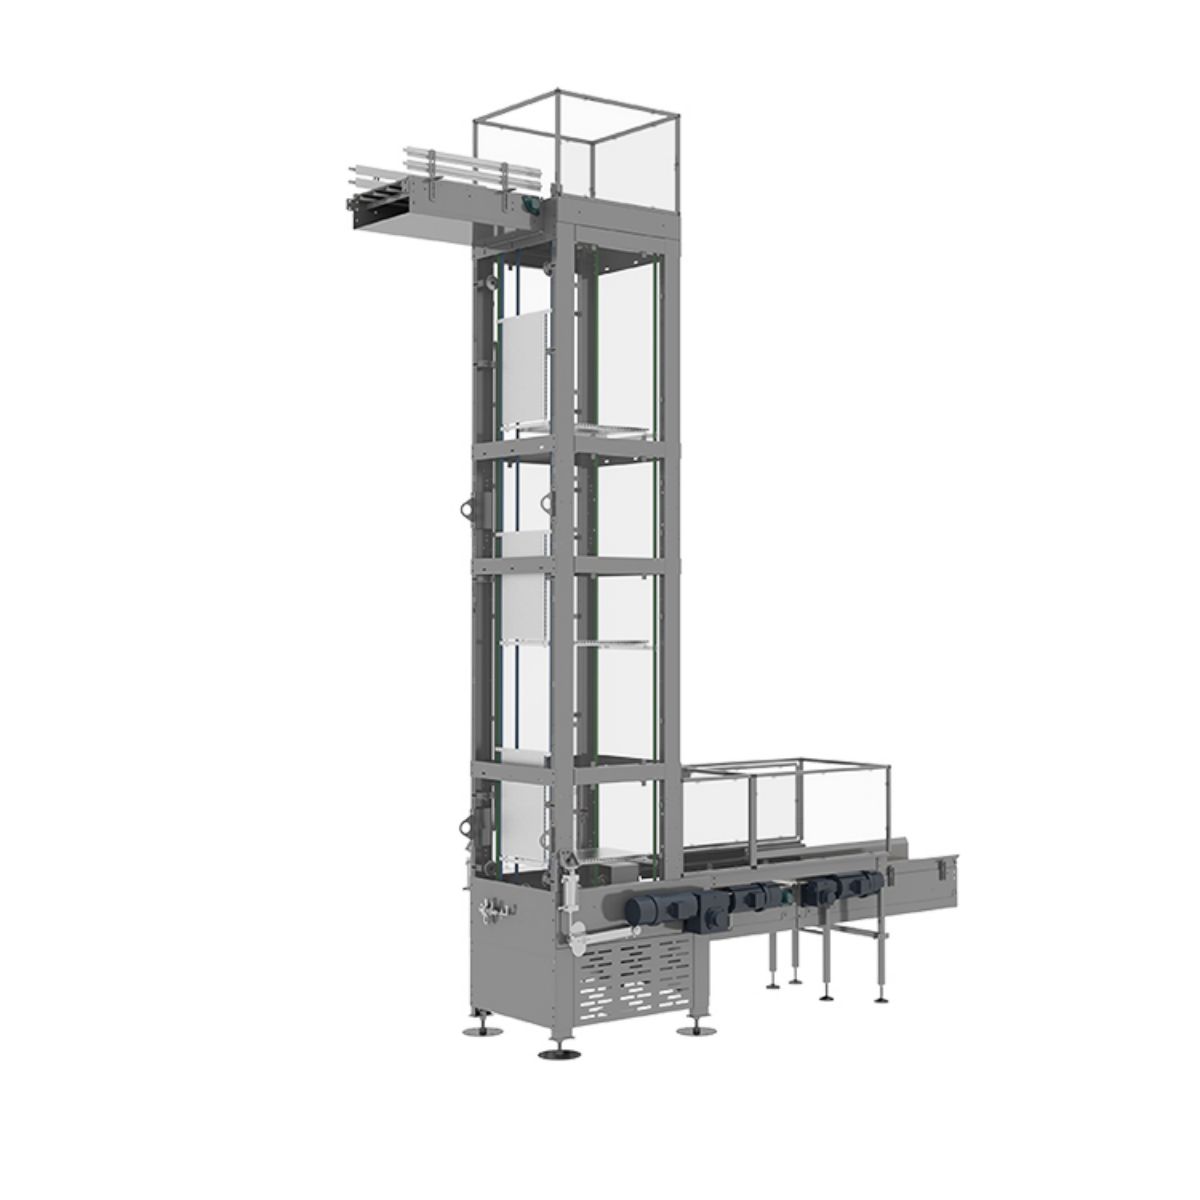 Il trasportatore verticale continuo: come migliorare la moderna gestione del magazzino